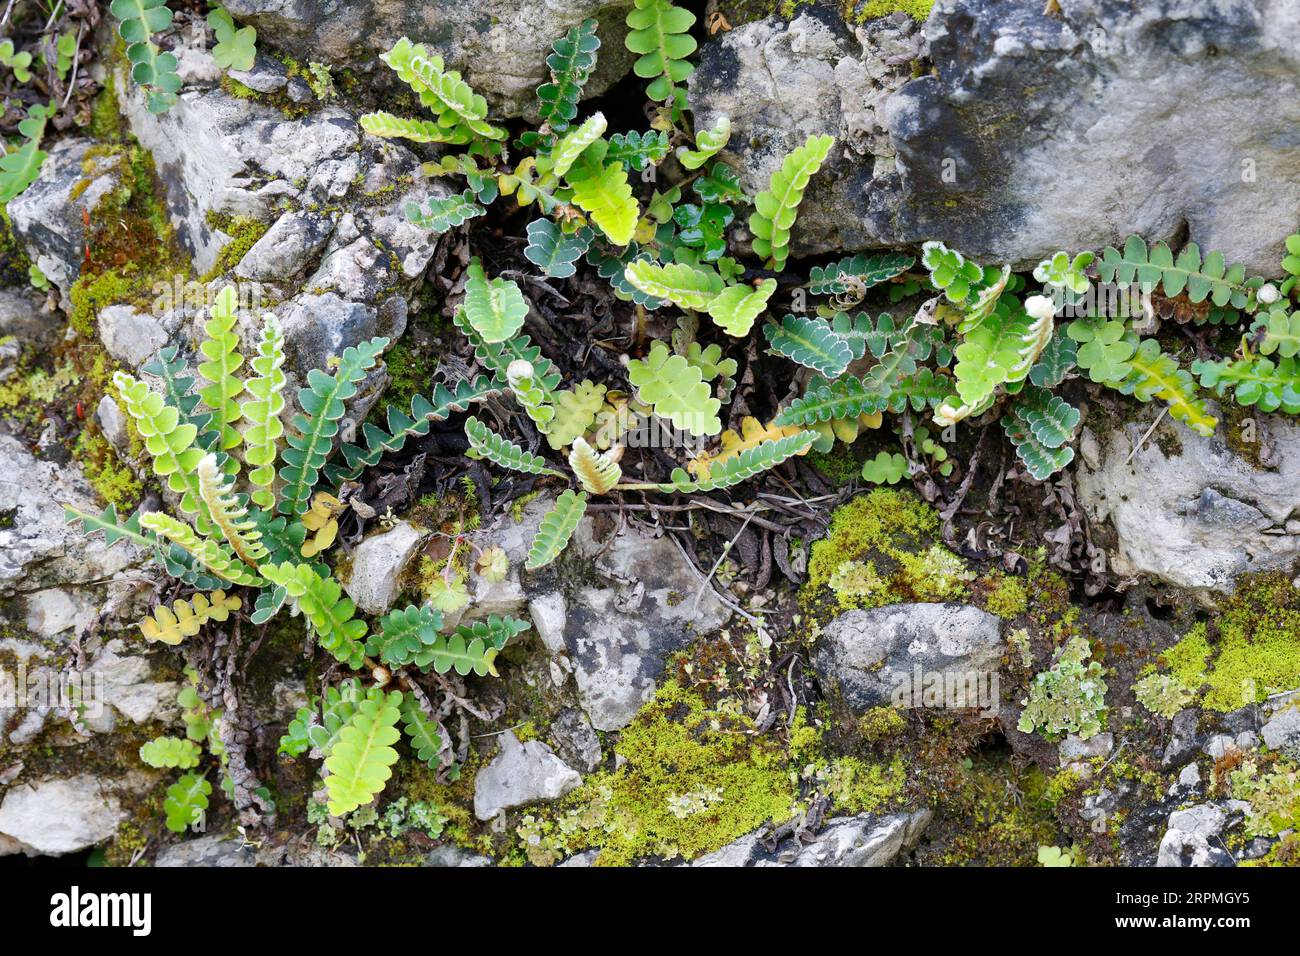 Rhizomanie commune, Rustyback (Asplenium ceterach, Ceterach officinarum), poussant dans un mur de pierre, Croatie Banque D'Images